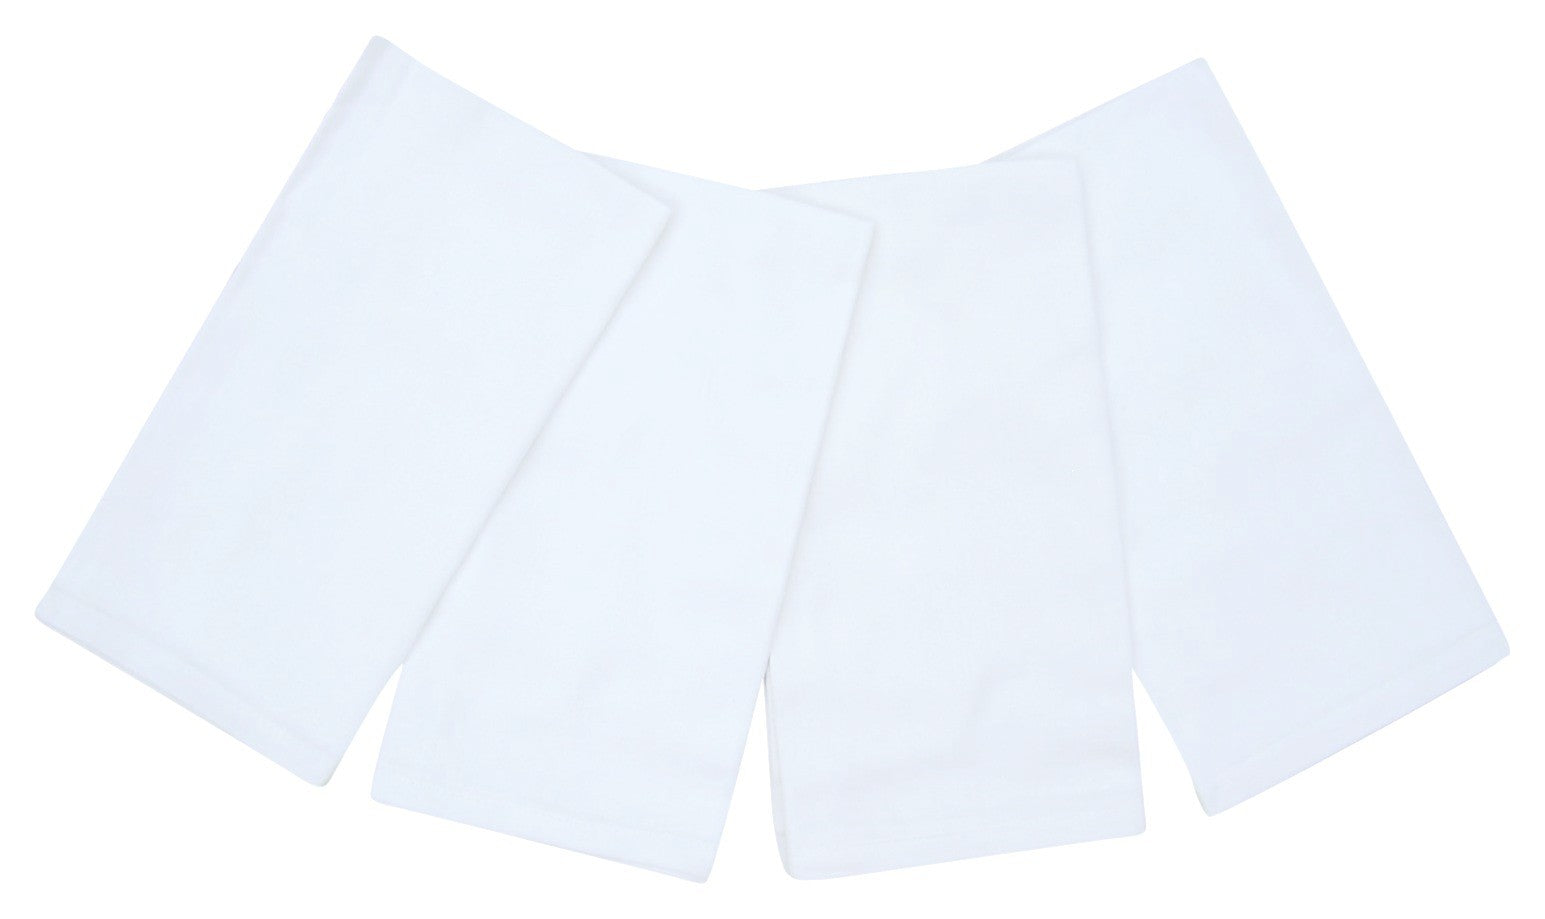 ผ้าเช็ดปาก Cotton 100% 20" x 20" ชุด 4 ชิ้น สีขาวสว่าง 